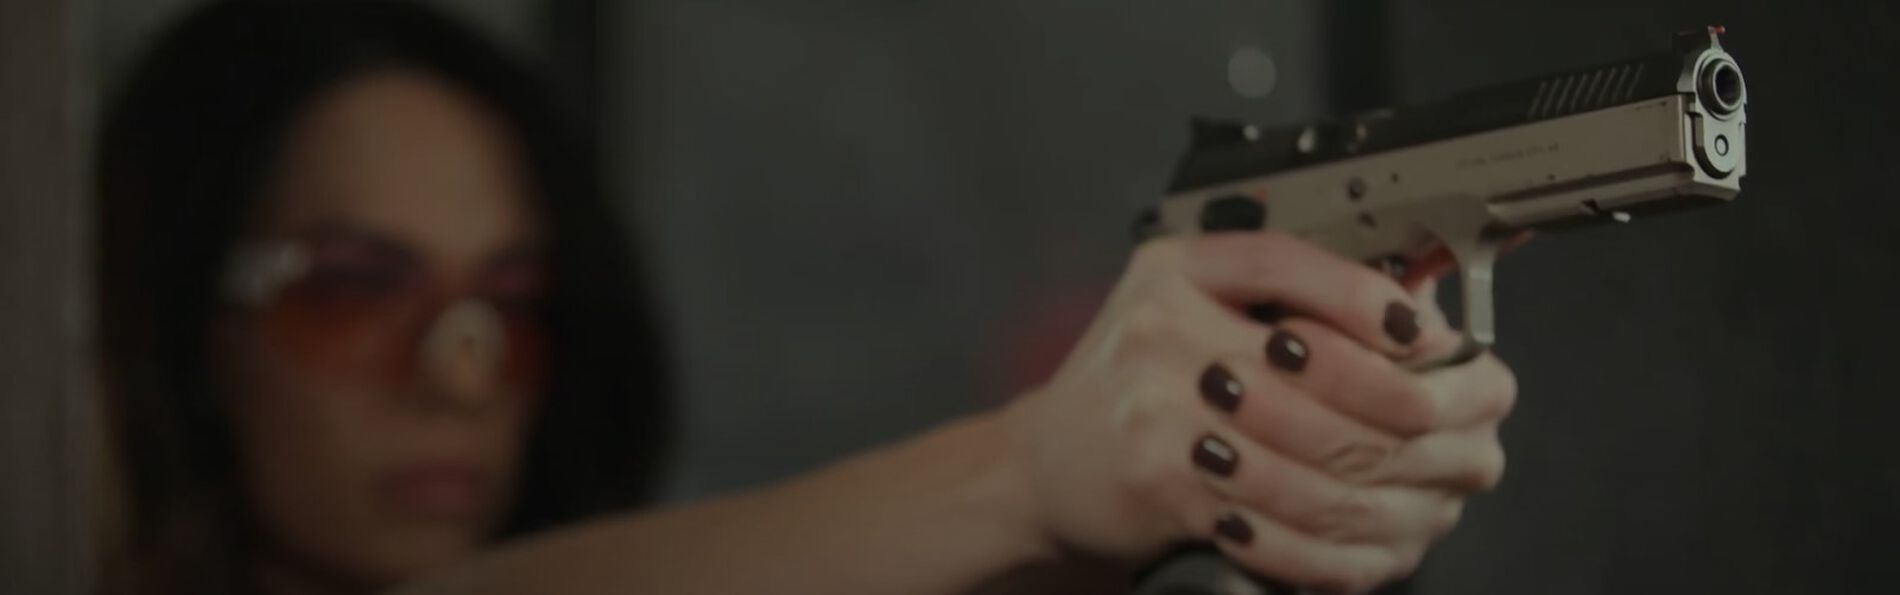 Krystal Dunn holding a pistol